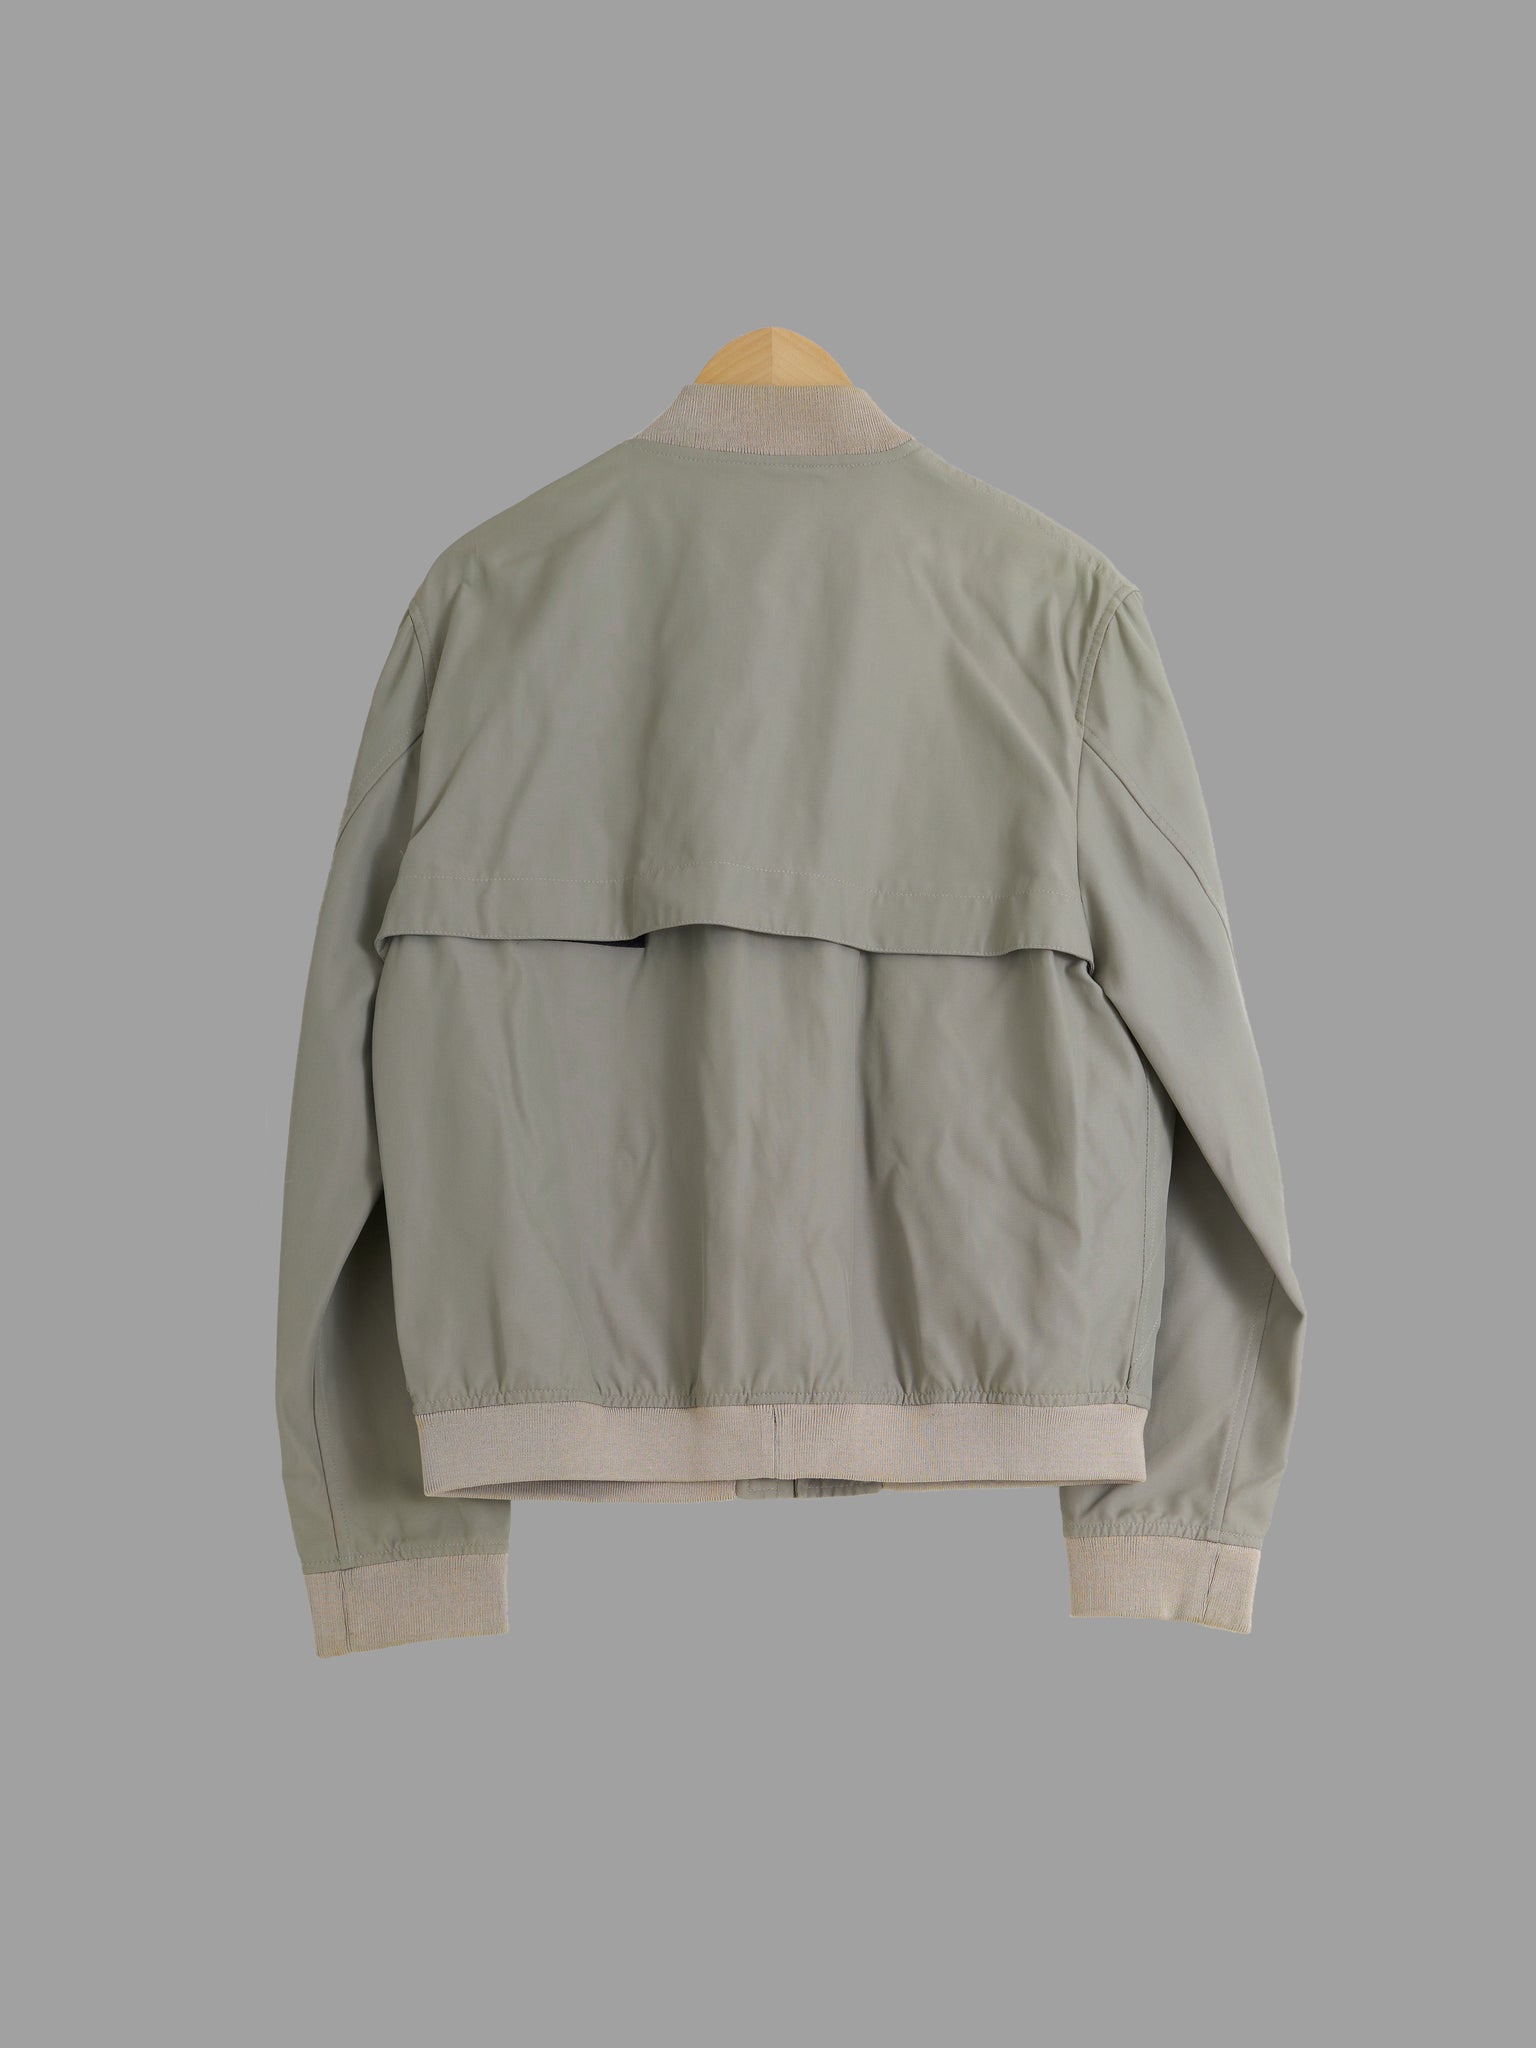 Samsonite greeny beige nylon interior pocket bomber jacket - size 46